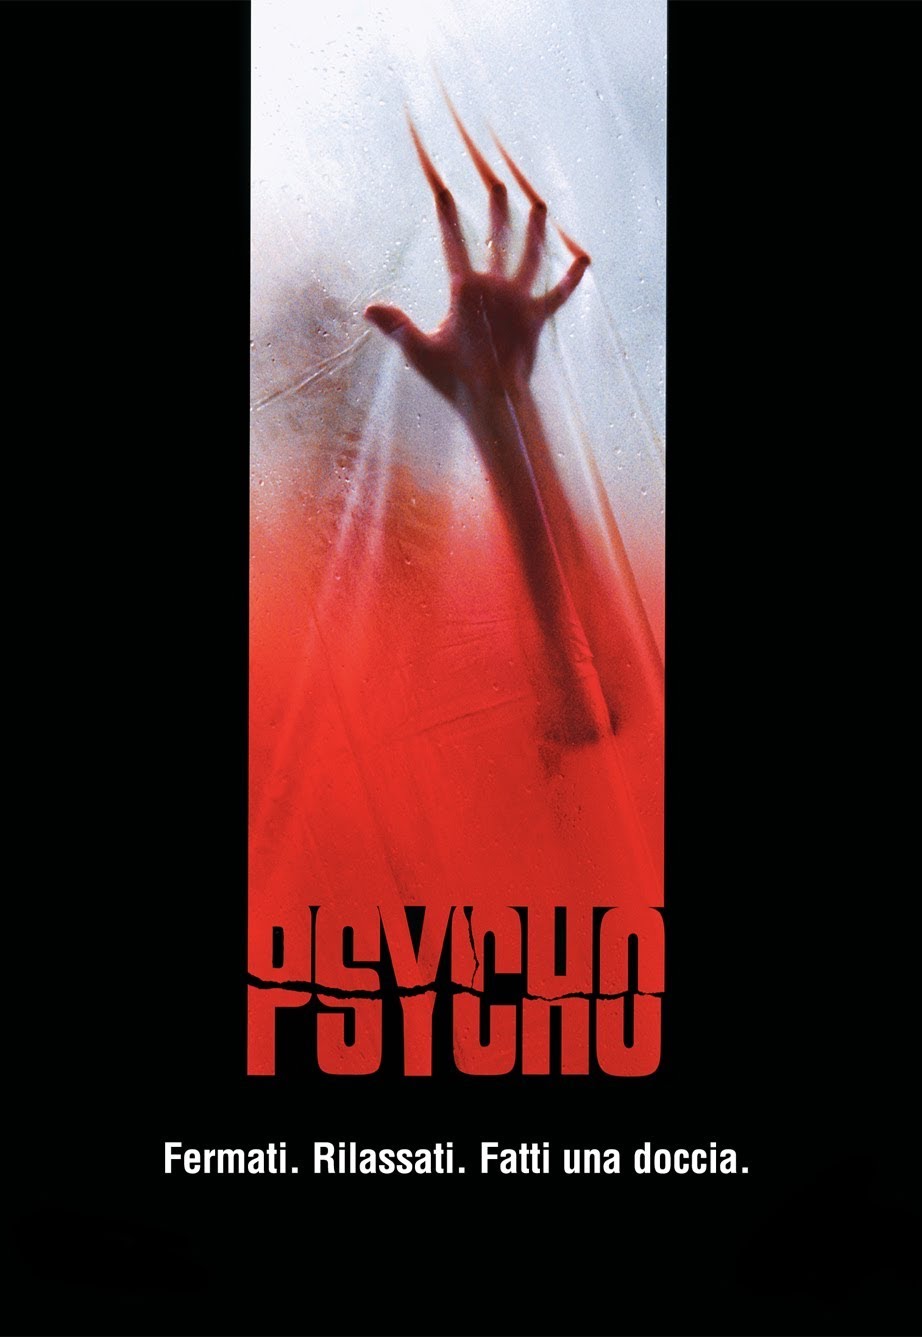 Psycho [HD] (1998)